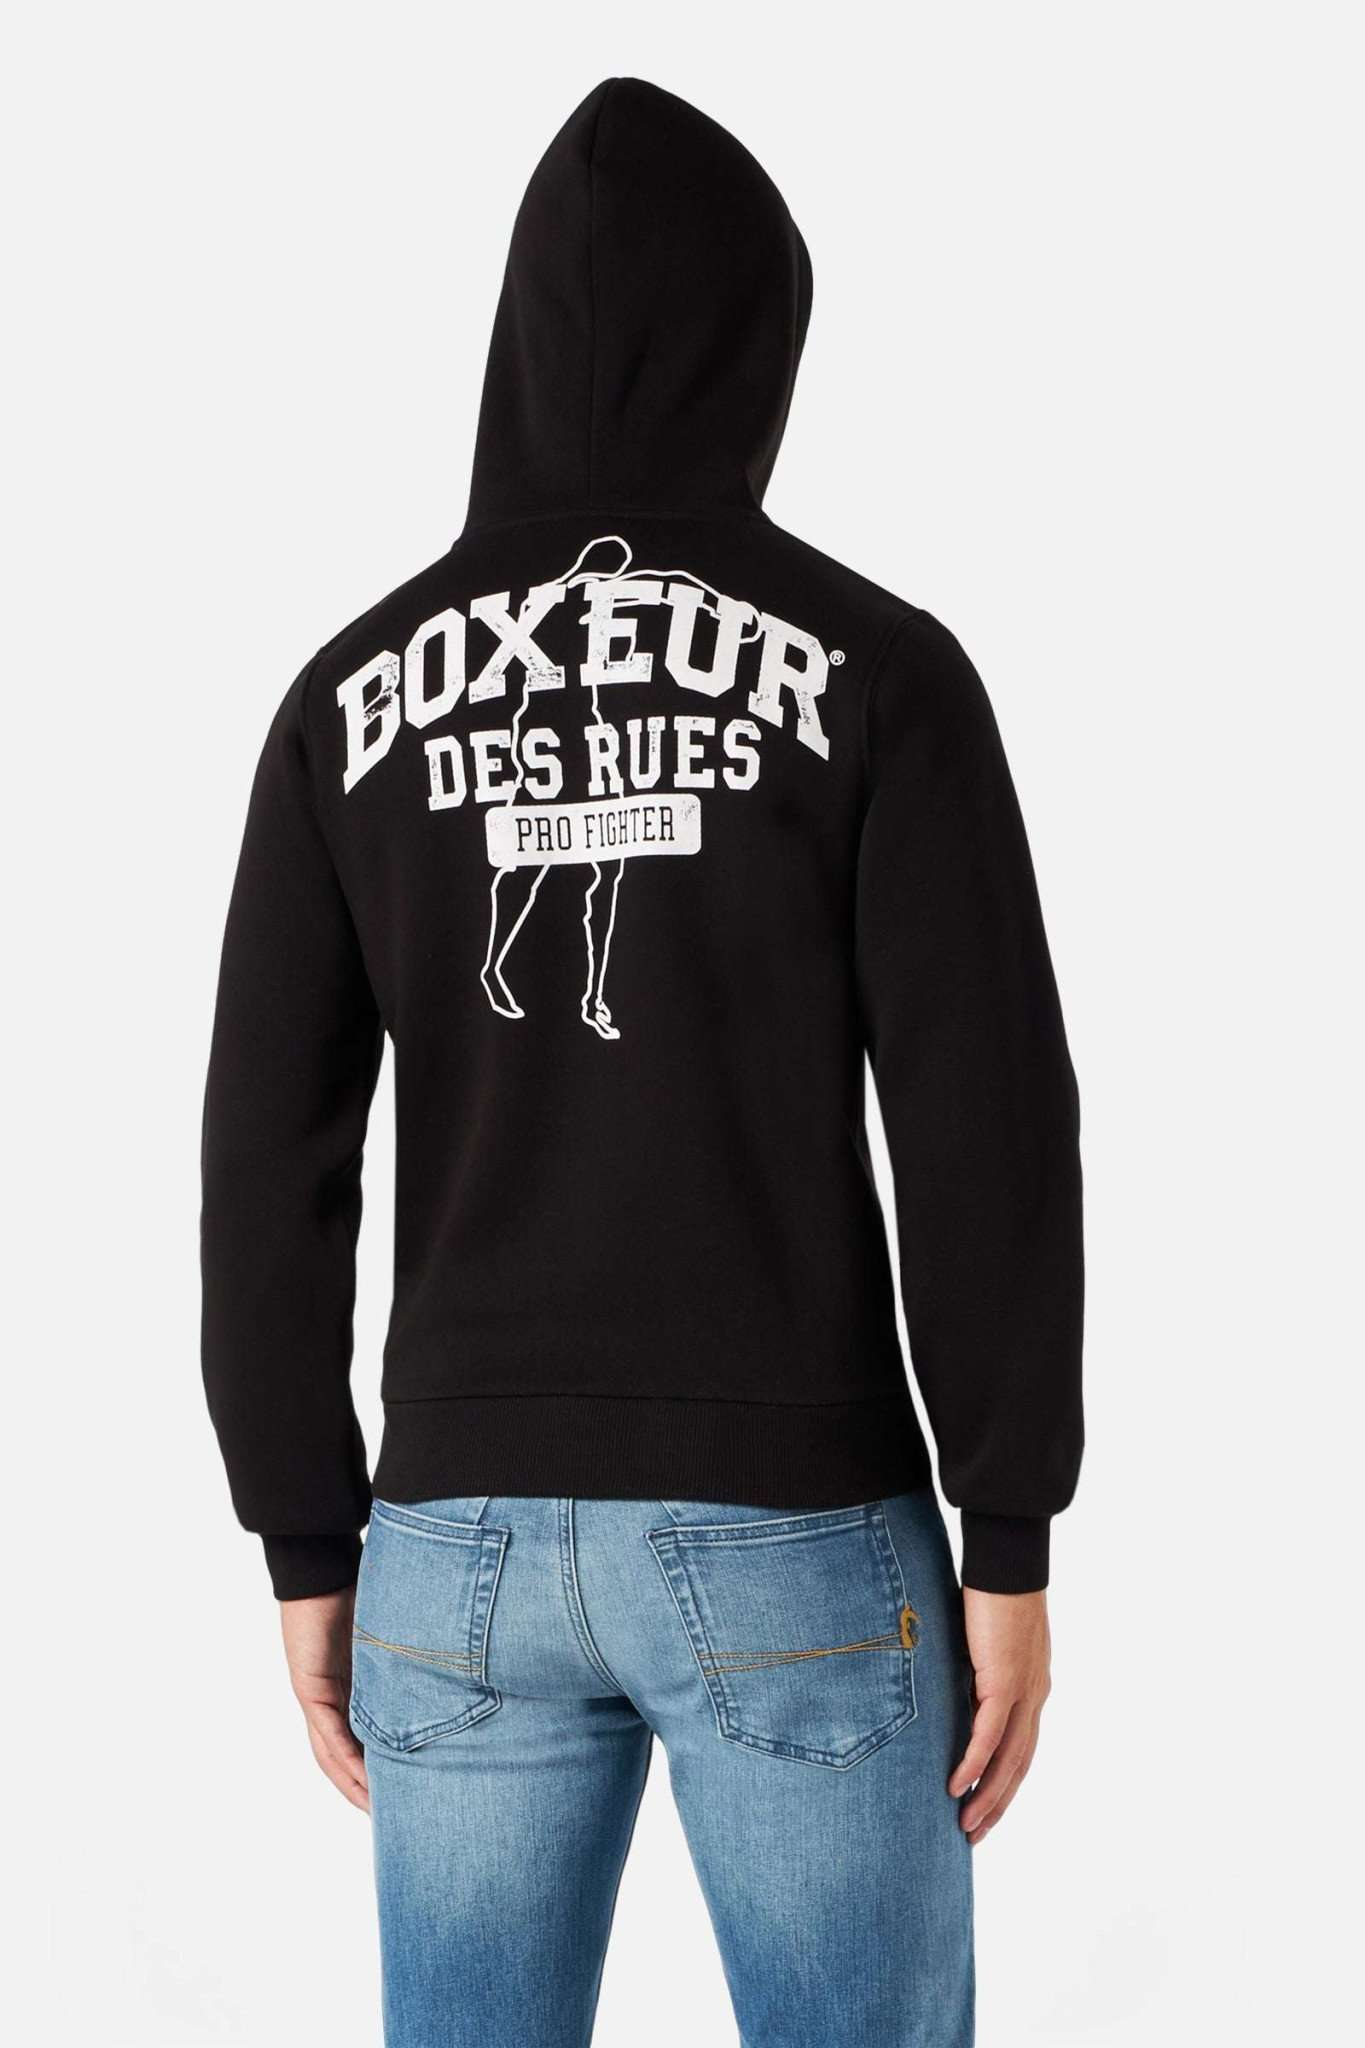 Man Hoodie Sweatshirt in Blackwhite Kapuzenpullover Boxeur des Rues   